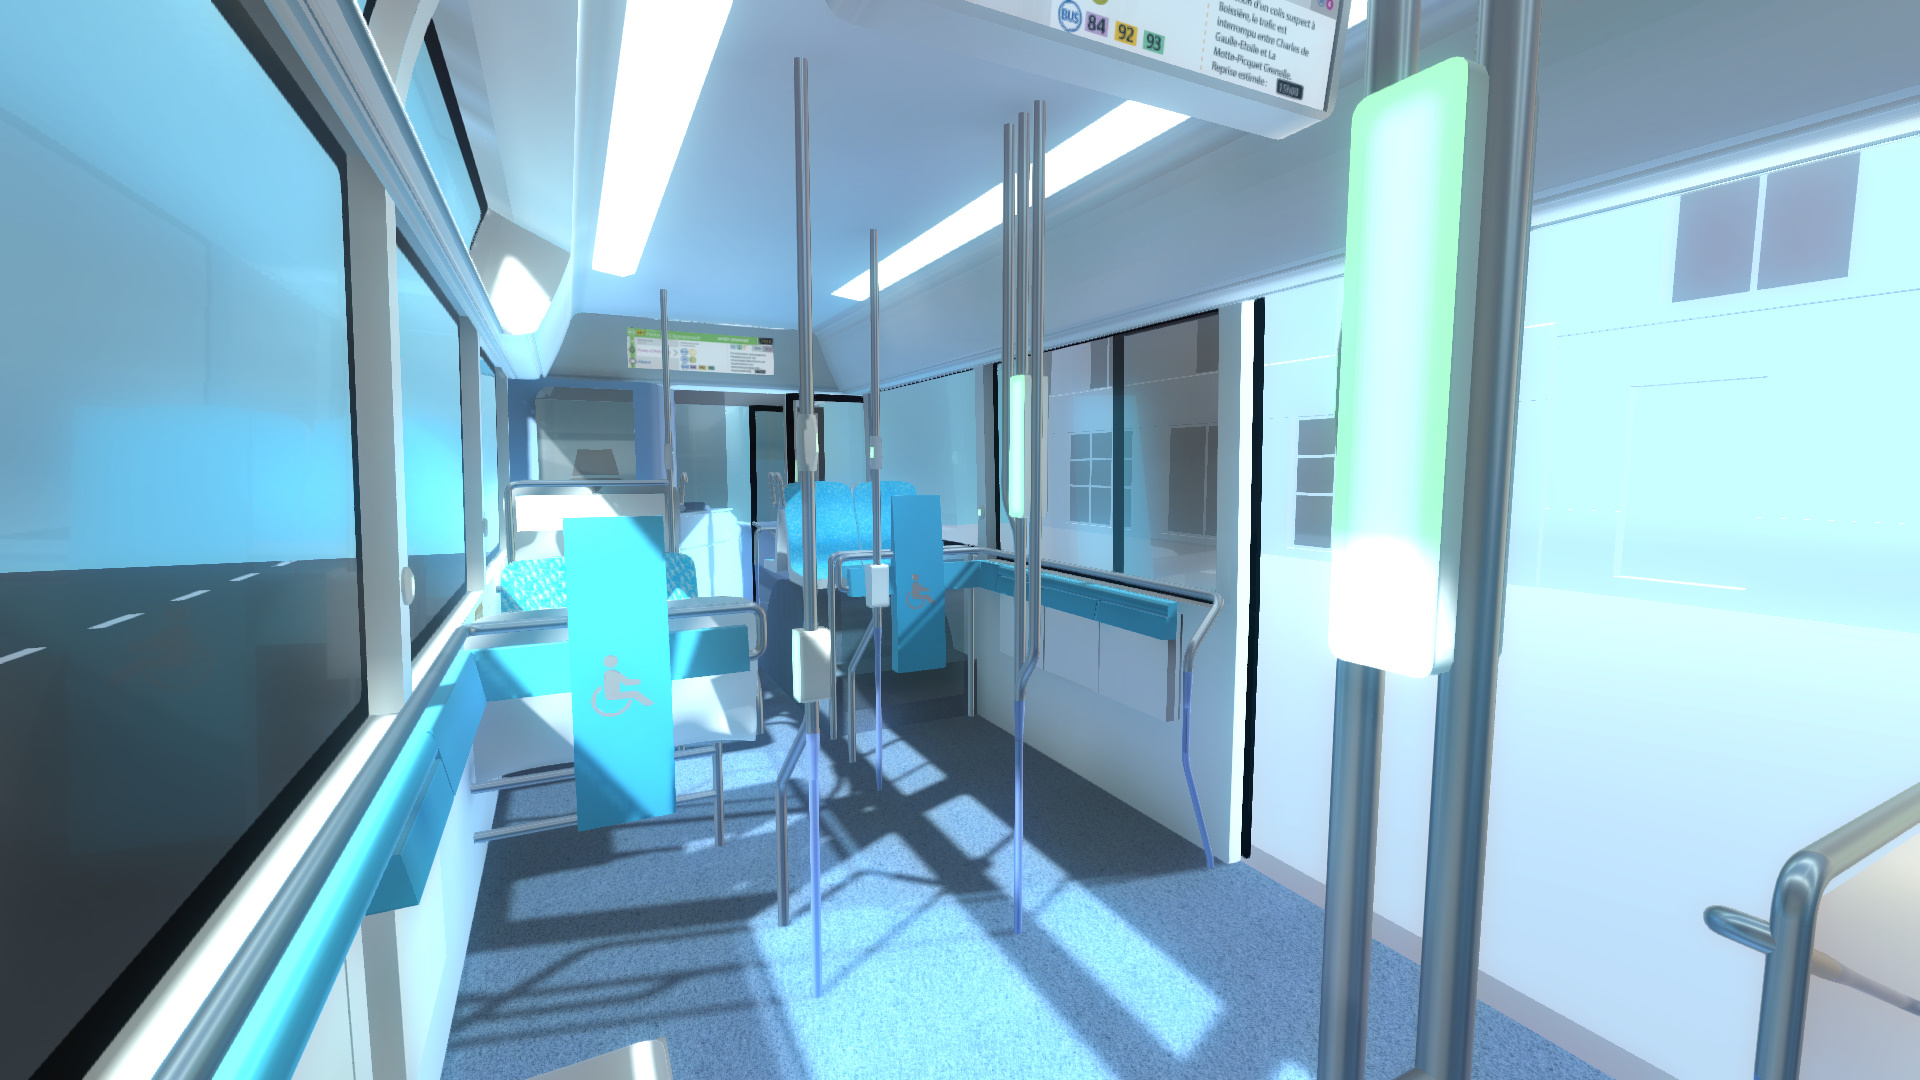 visite virtuelle en 3D du bus RATP (intérieur)